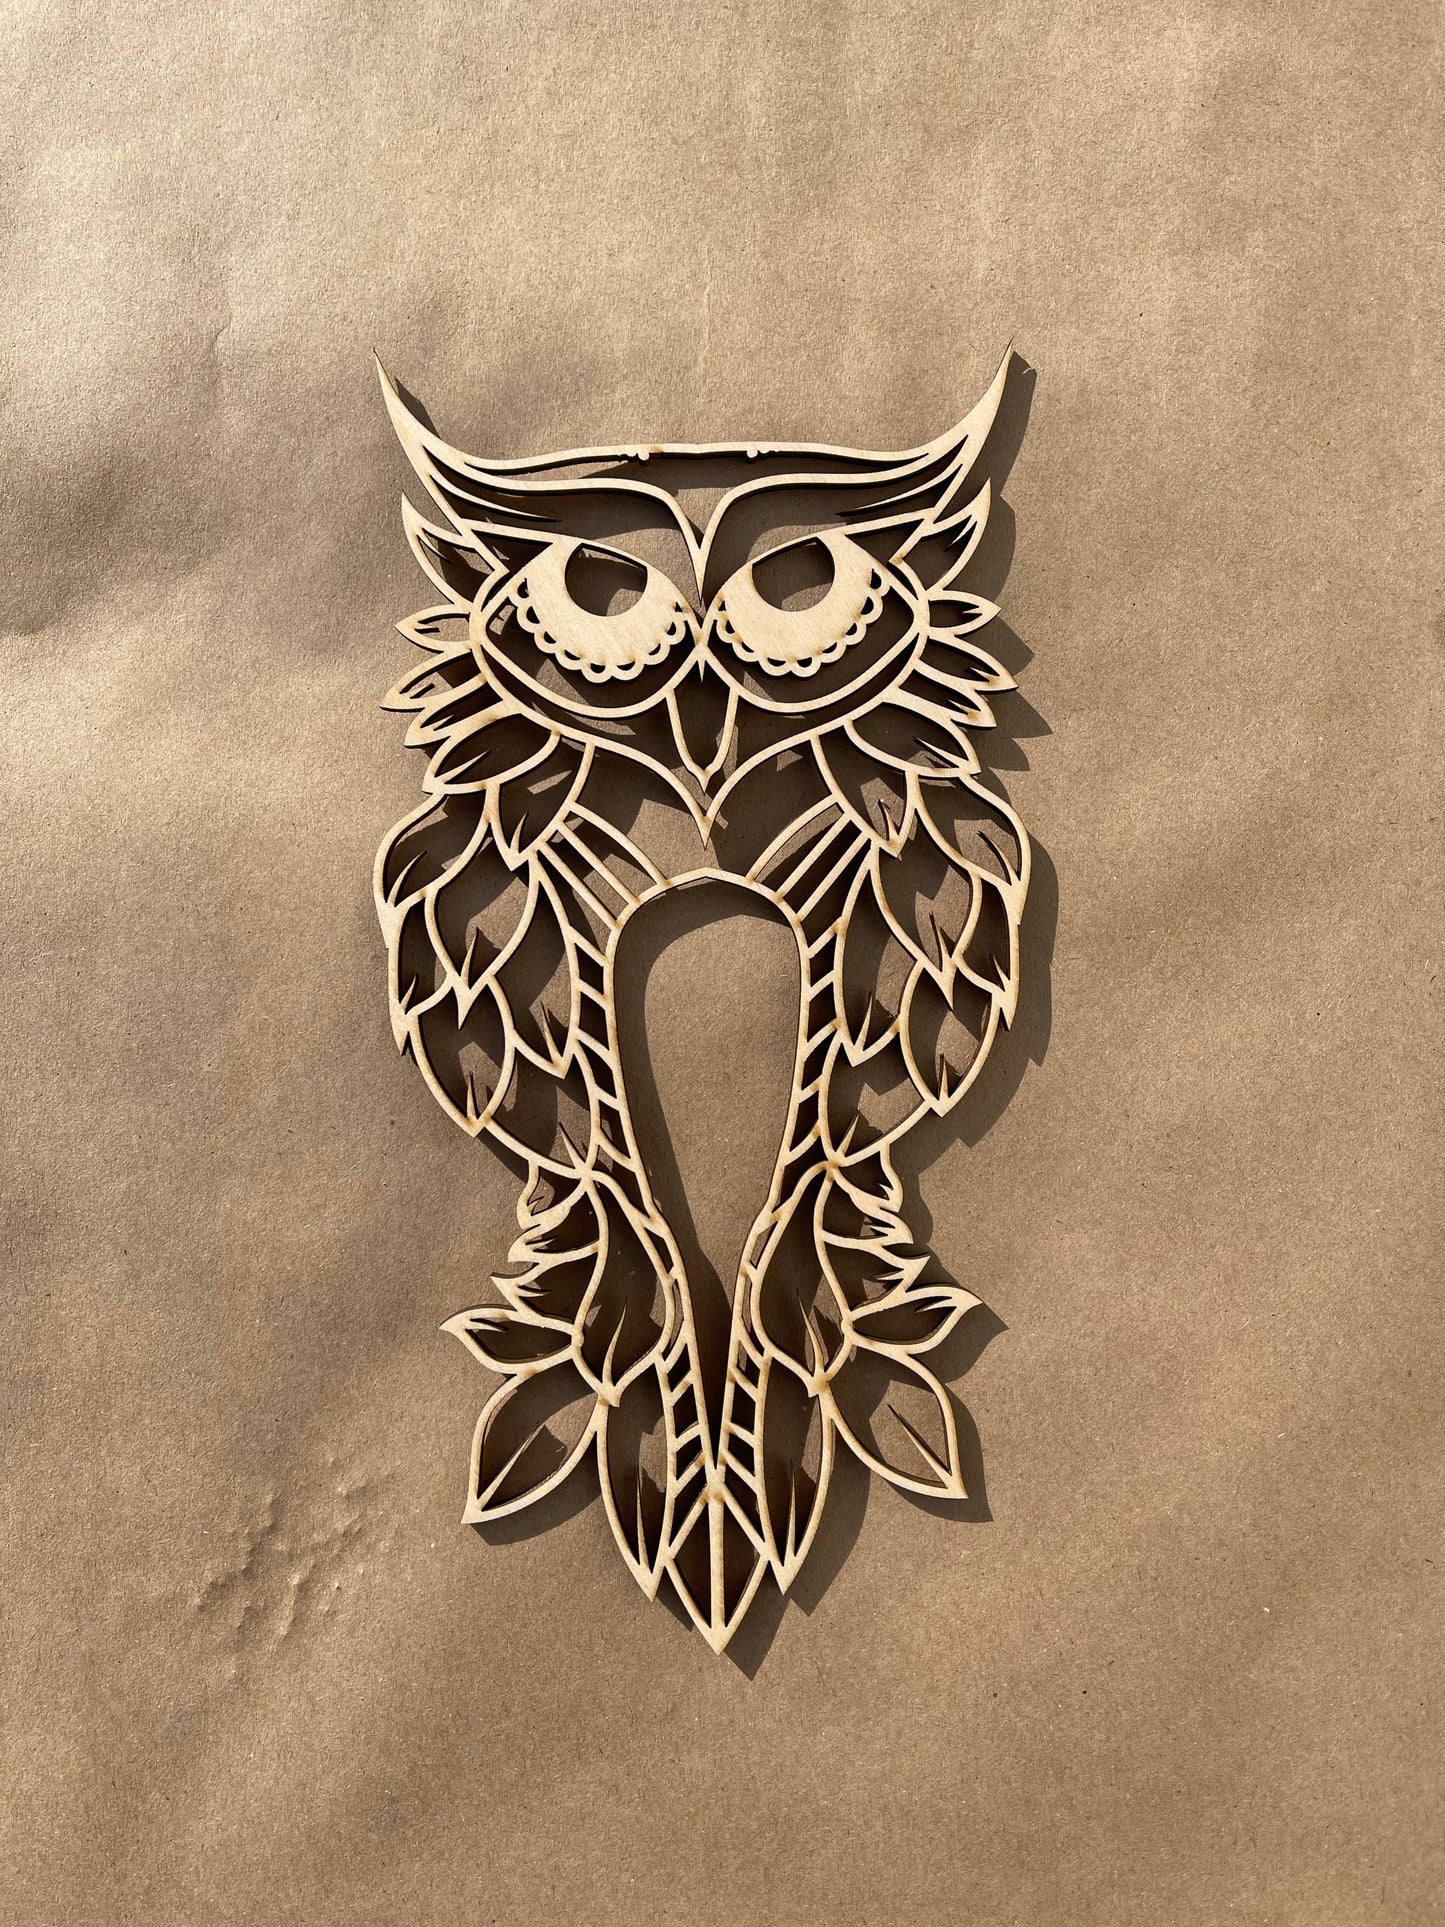 Owl Unfinished Wood frame. Resin art frame. DIY wood cutout. Unfinished laser cut wood resin frame. Wood blanks.